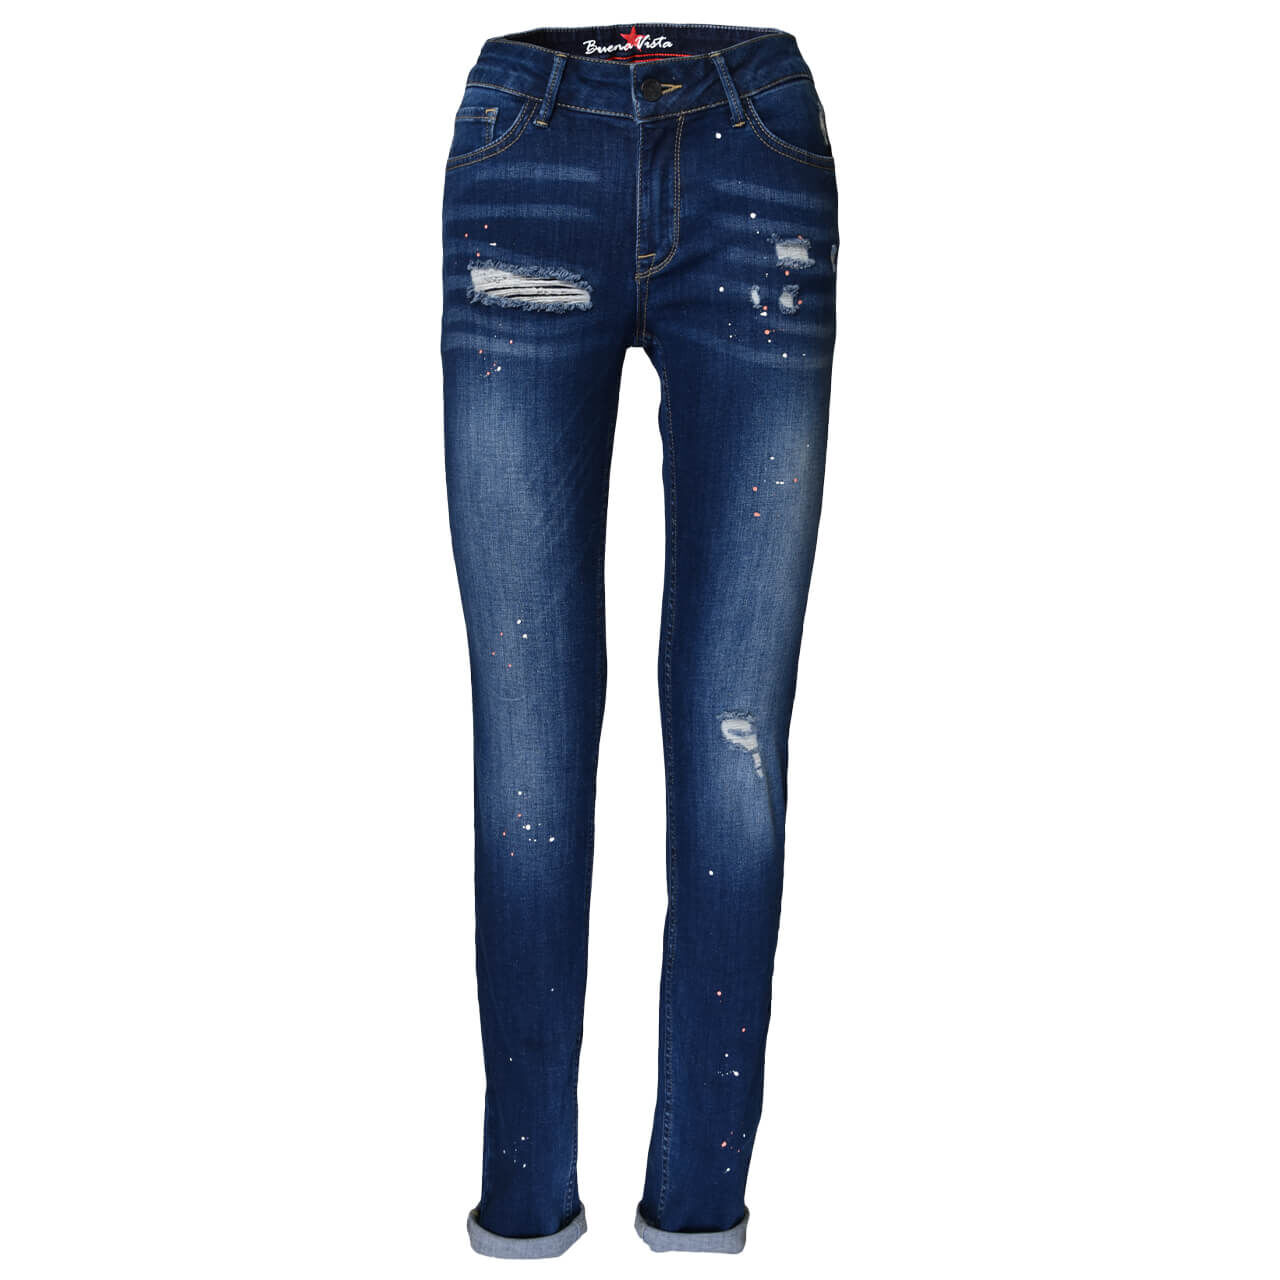 Buena Vista Jeans Italy Stretch Denim für Damen in Dunkelblau angewaschen mit Destroyed-Effekten und Painted-Effekt, FarbNr.: 2575